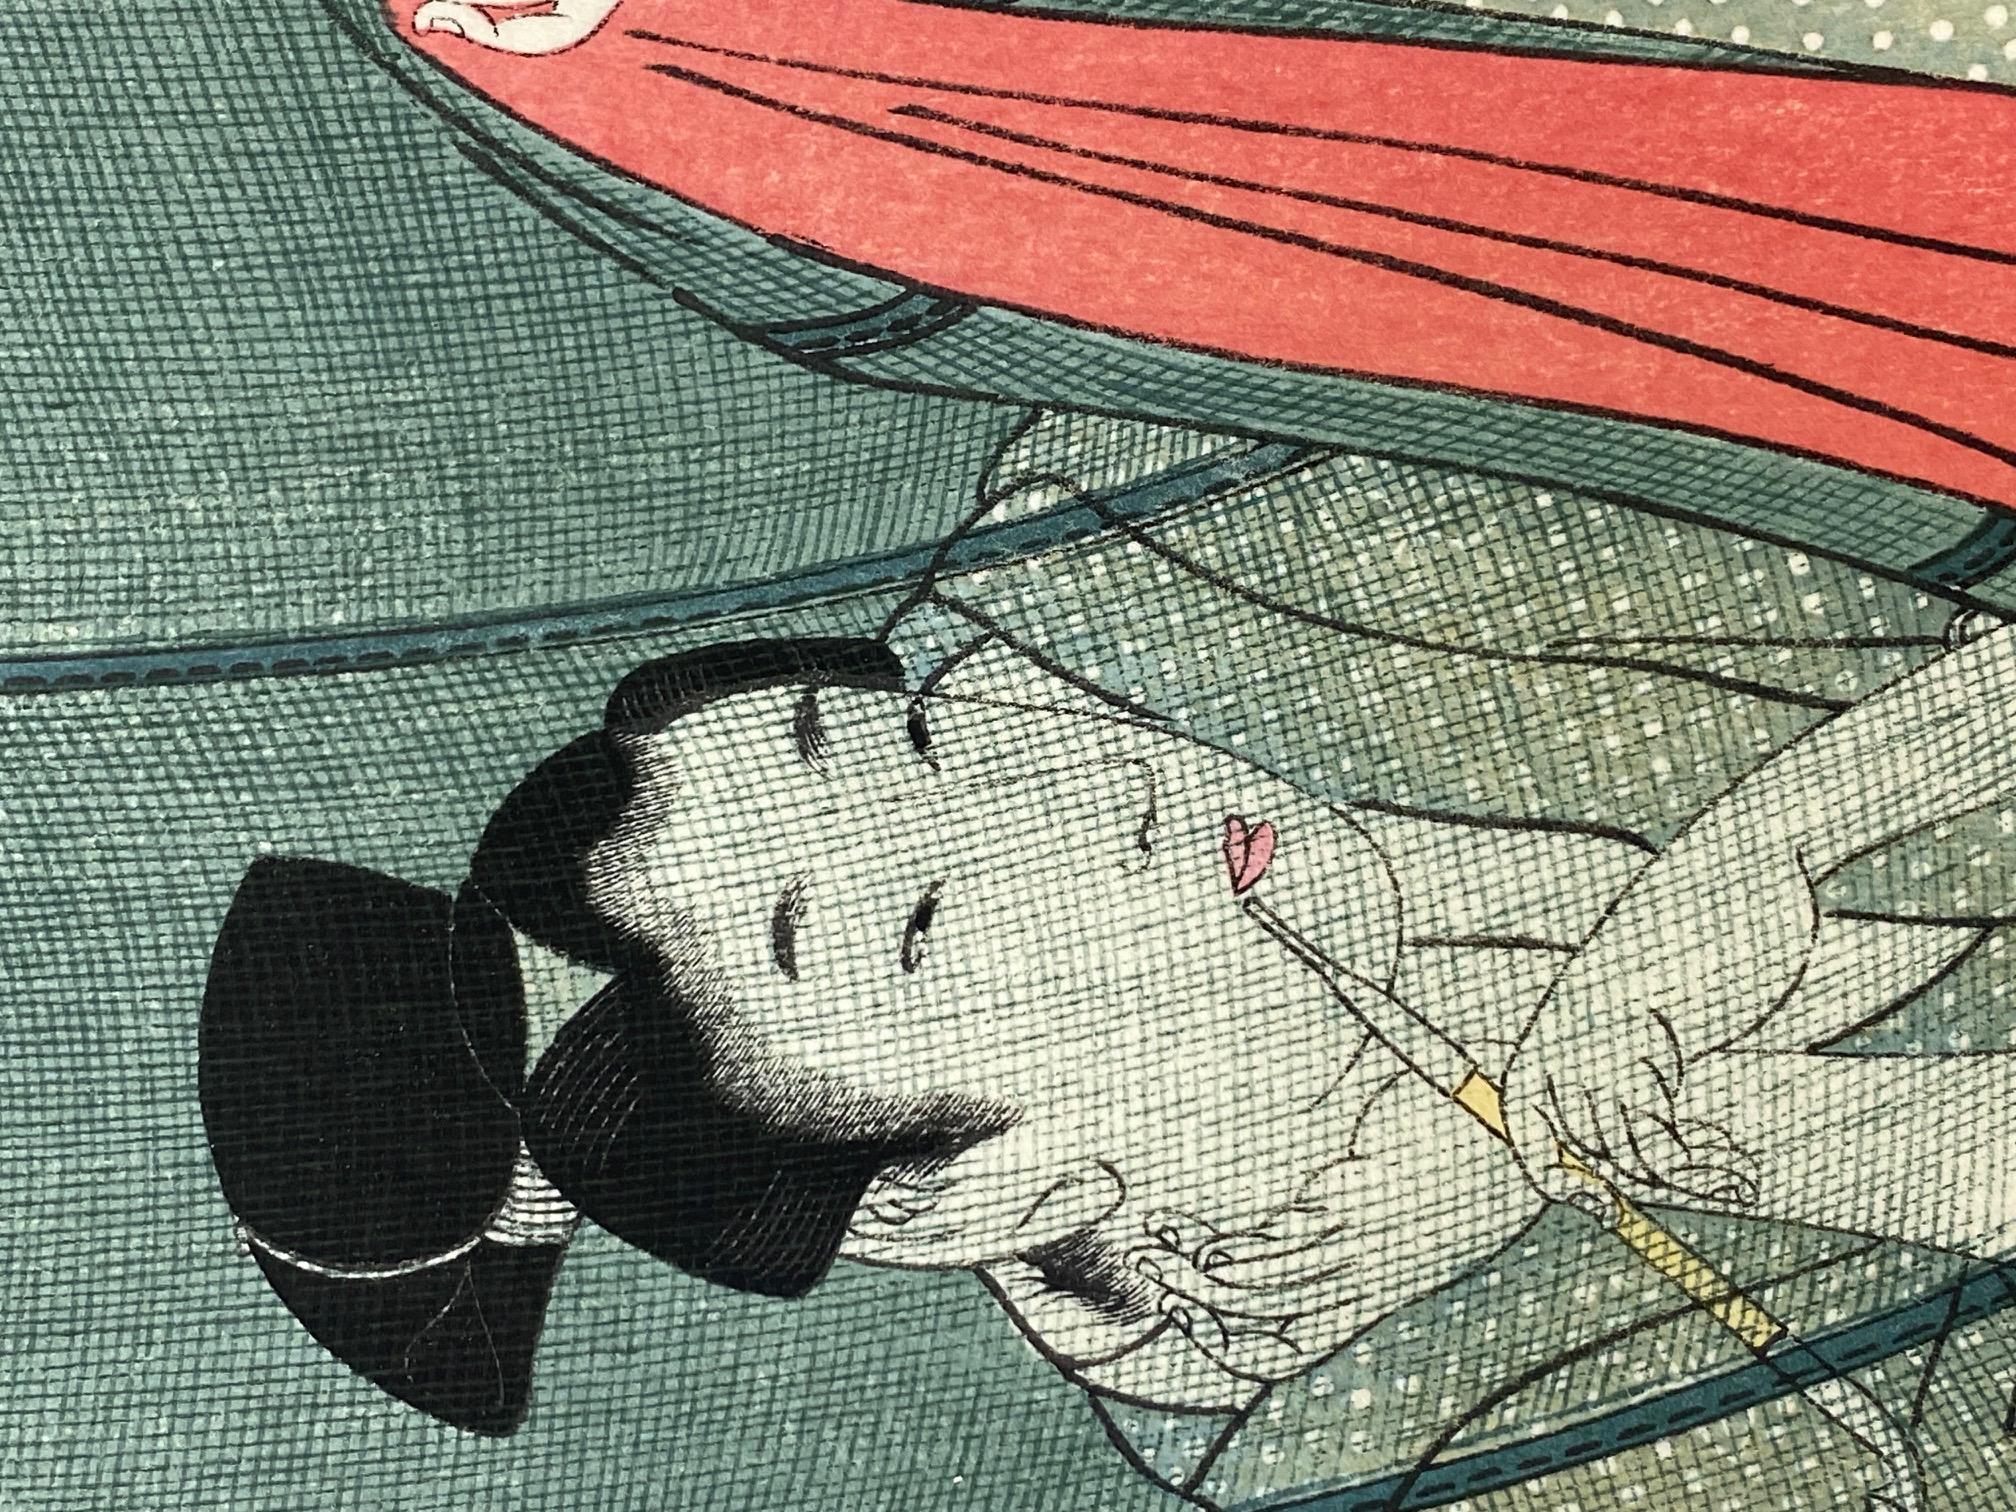 20th Century Kitagawa Utamaro Japanese Woodblock Print The Mosquito Net Women With Opium Pipe